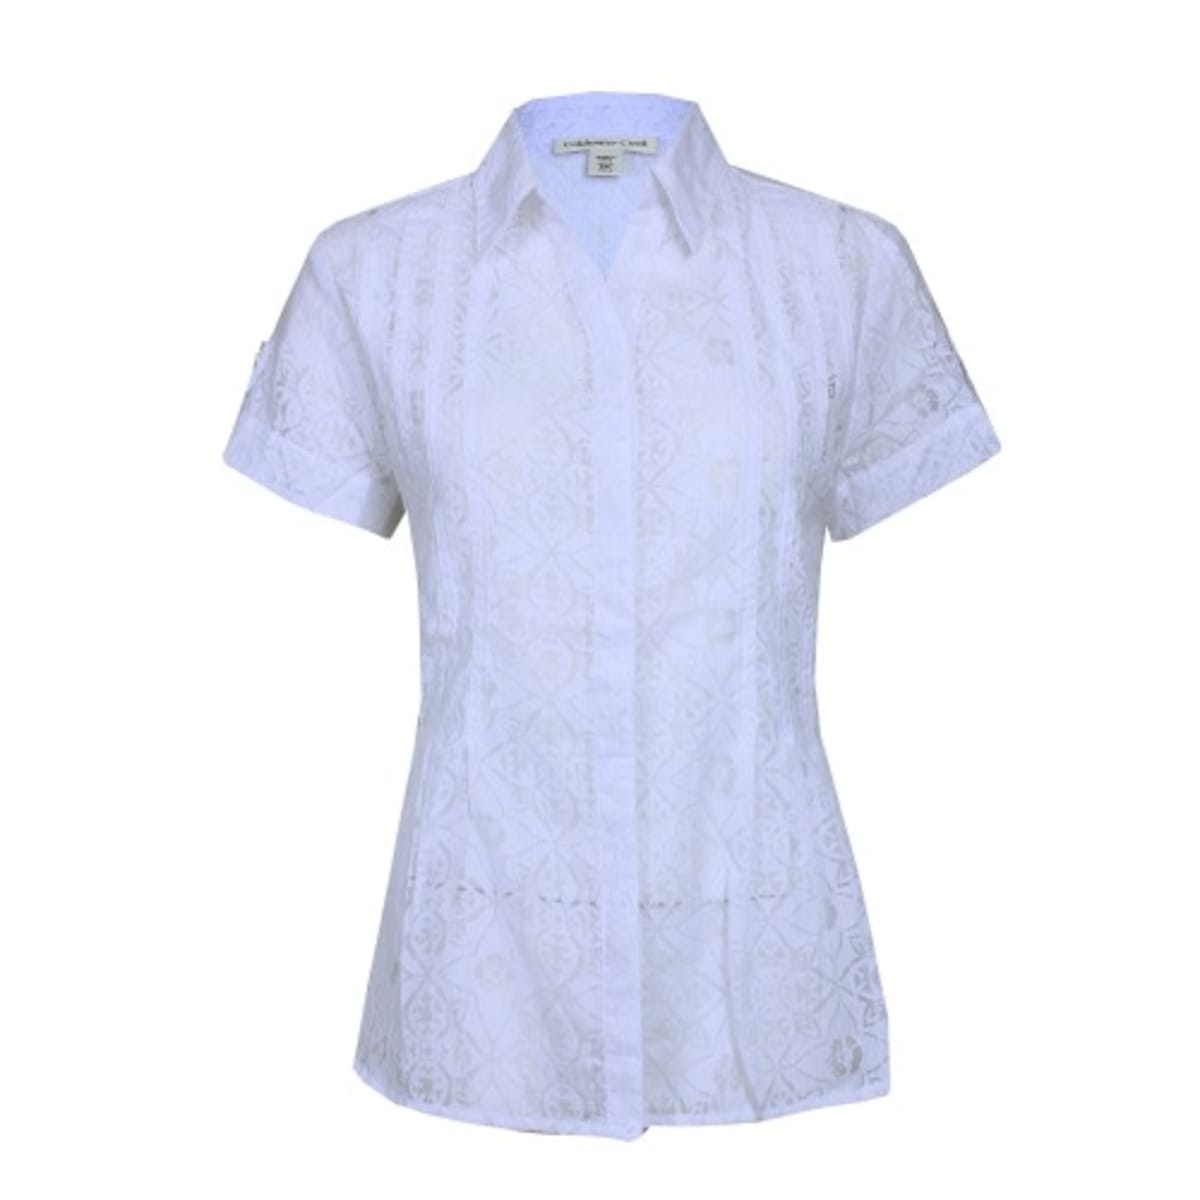 Ladies Turtleneck Long Sleeve T-shirt - White